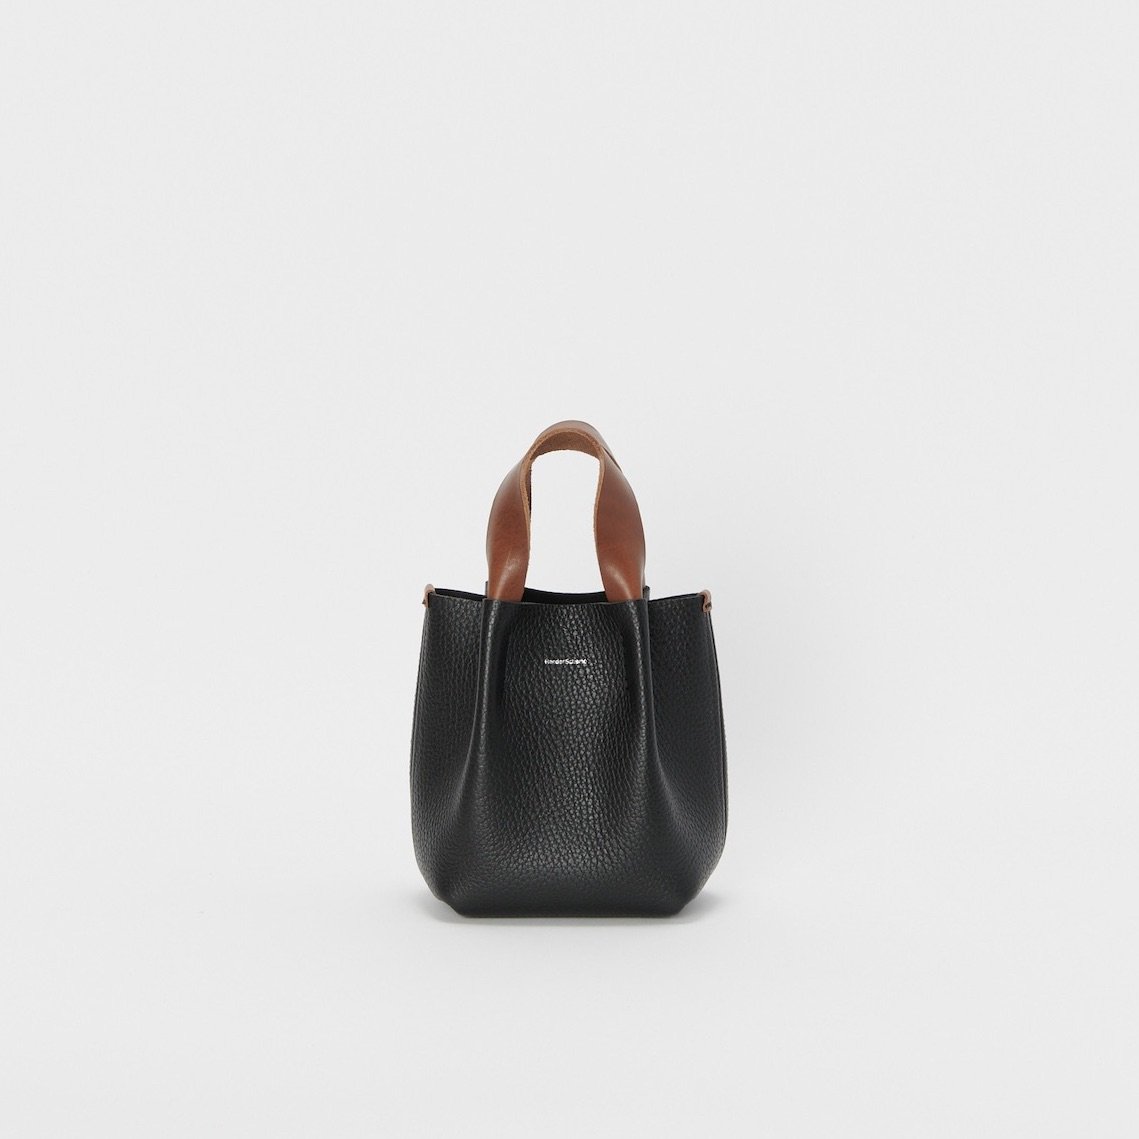 美品 Hender scheme piano bag small blackSサイズ